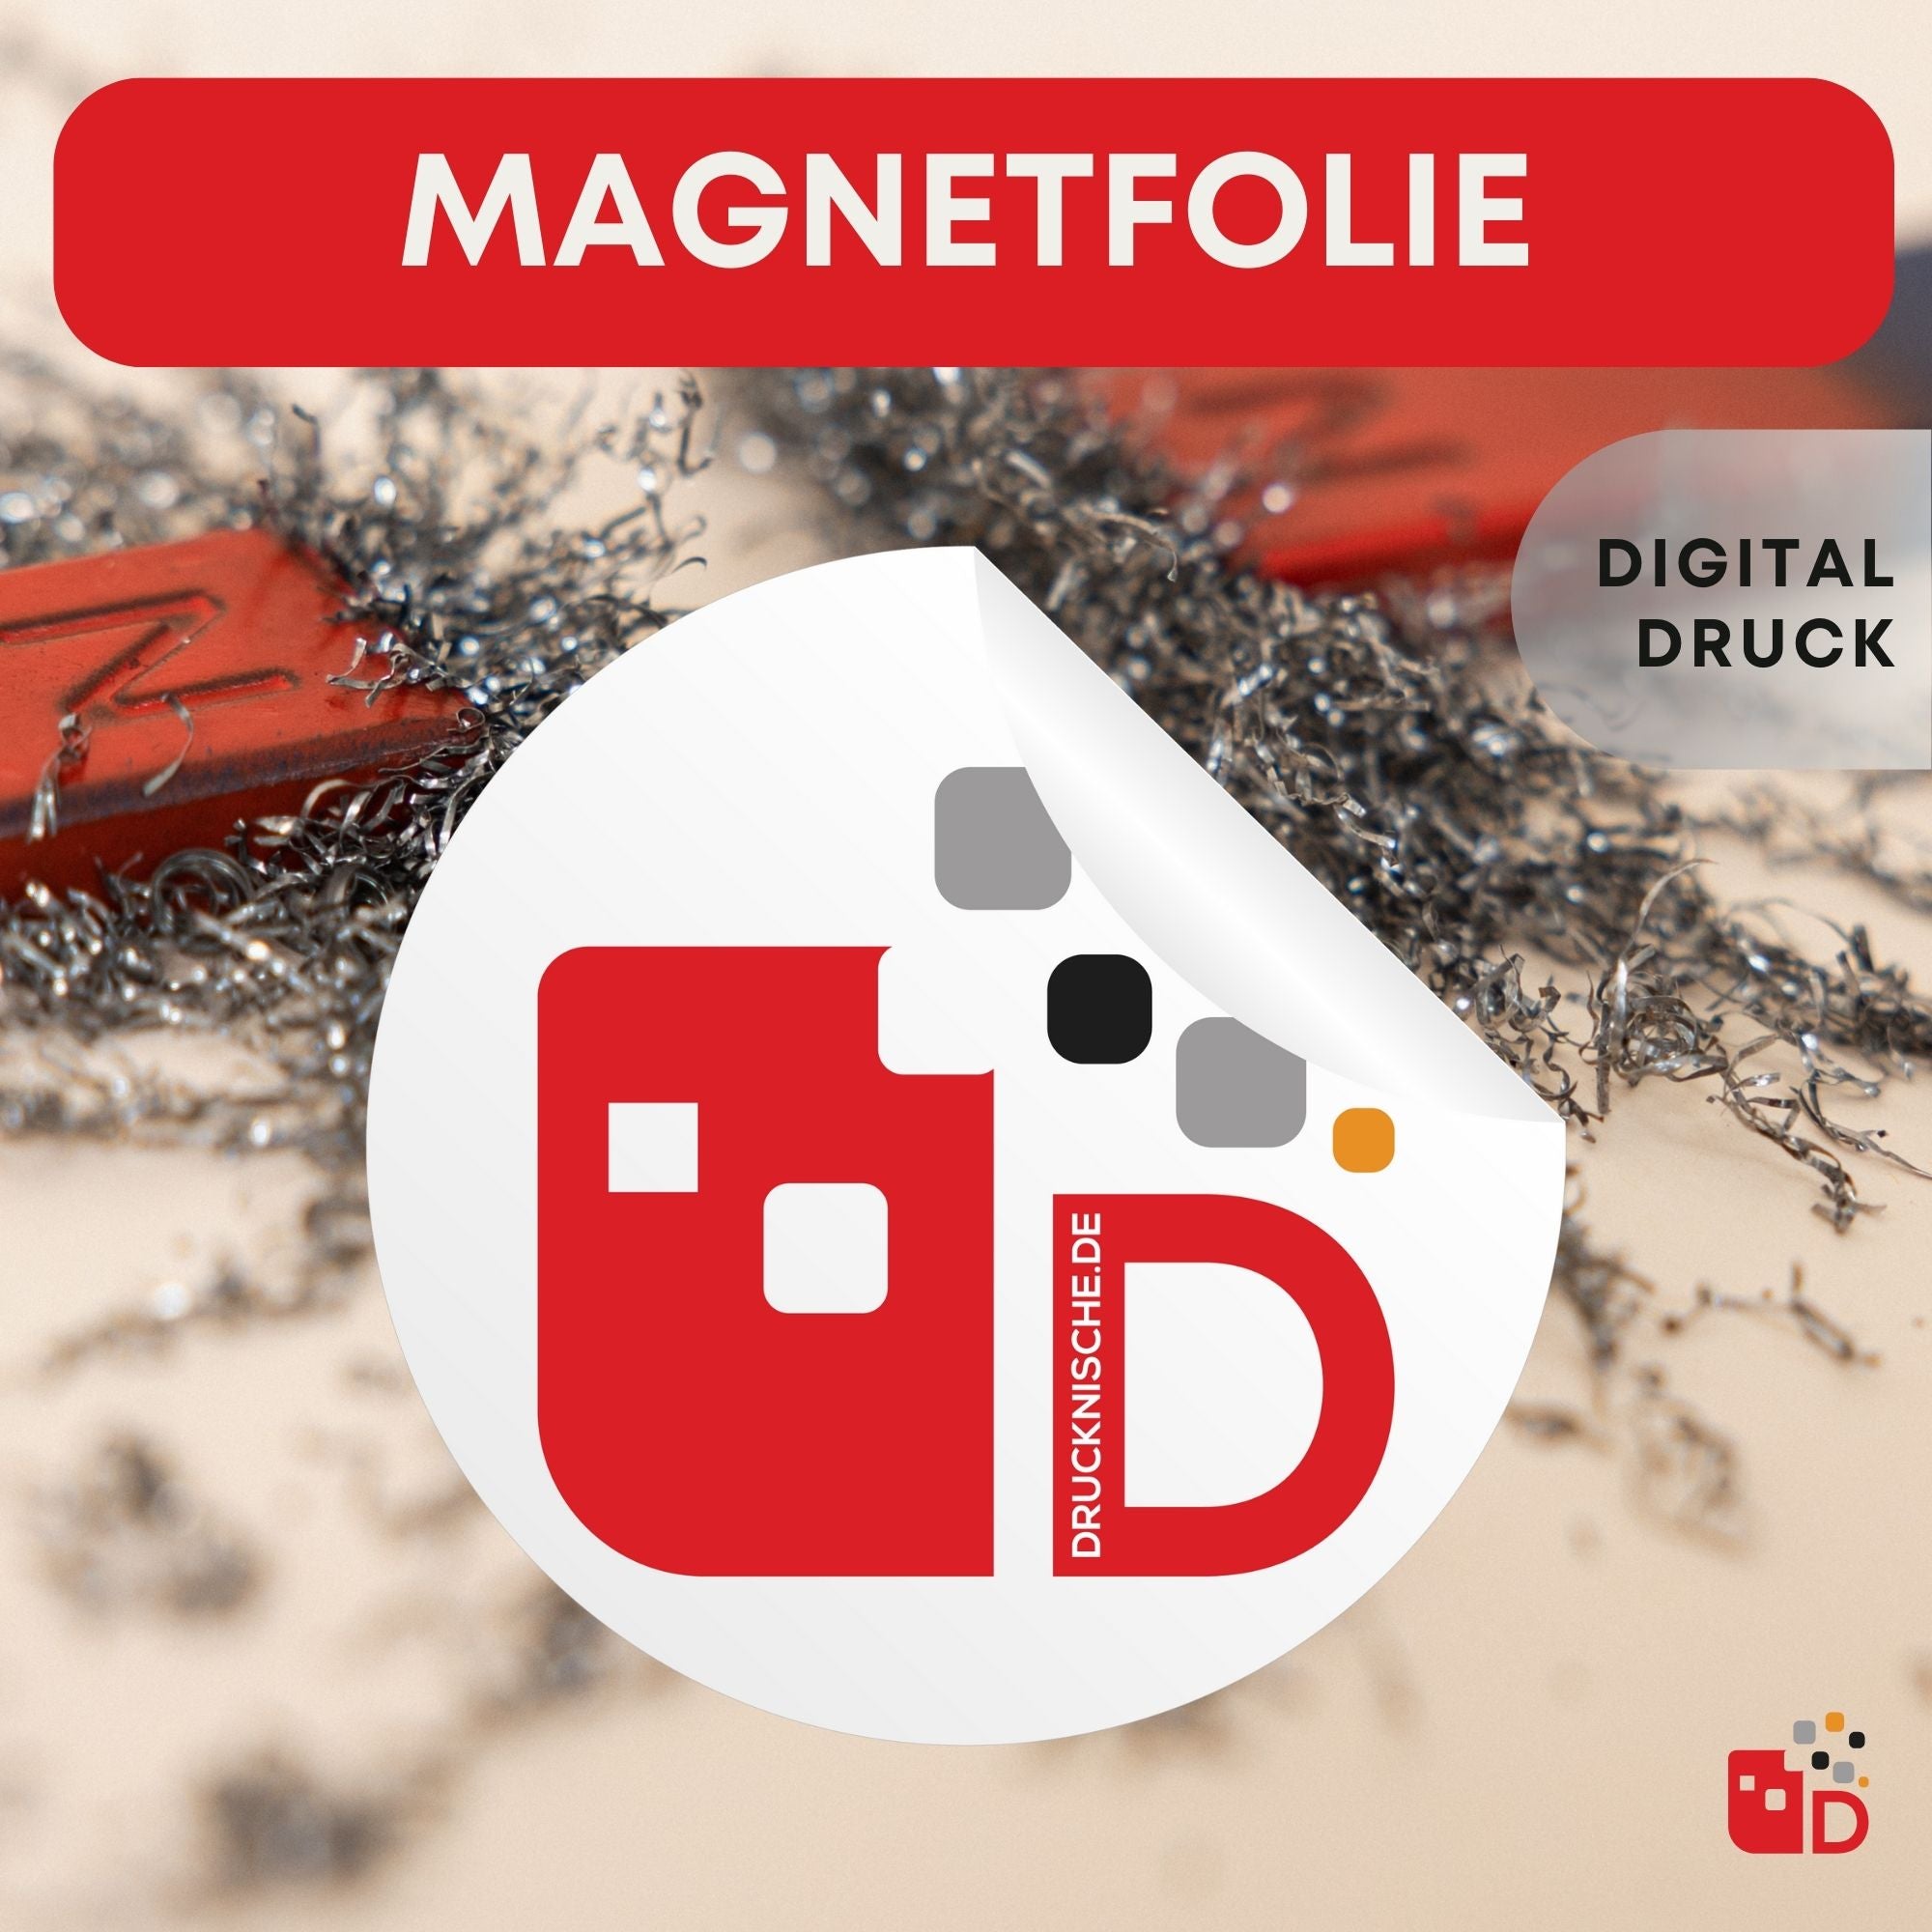 Magnetfolie (Digitaldruck)